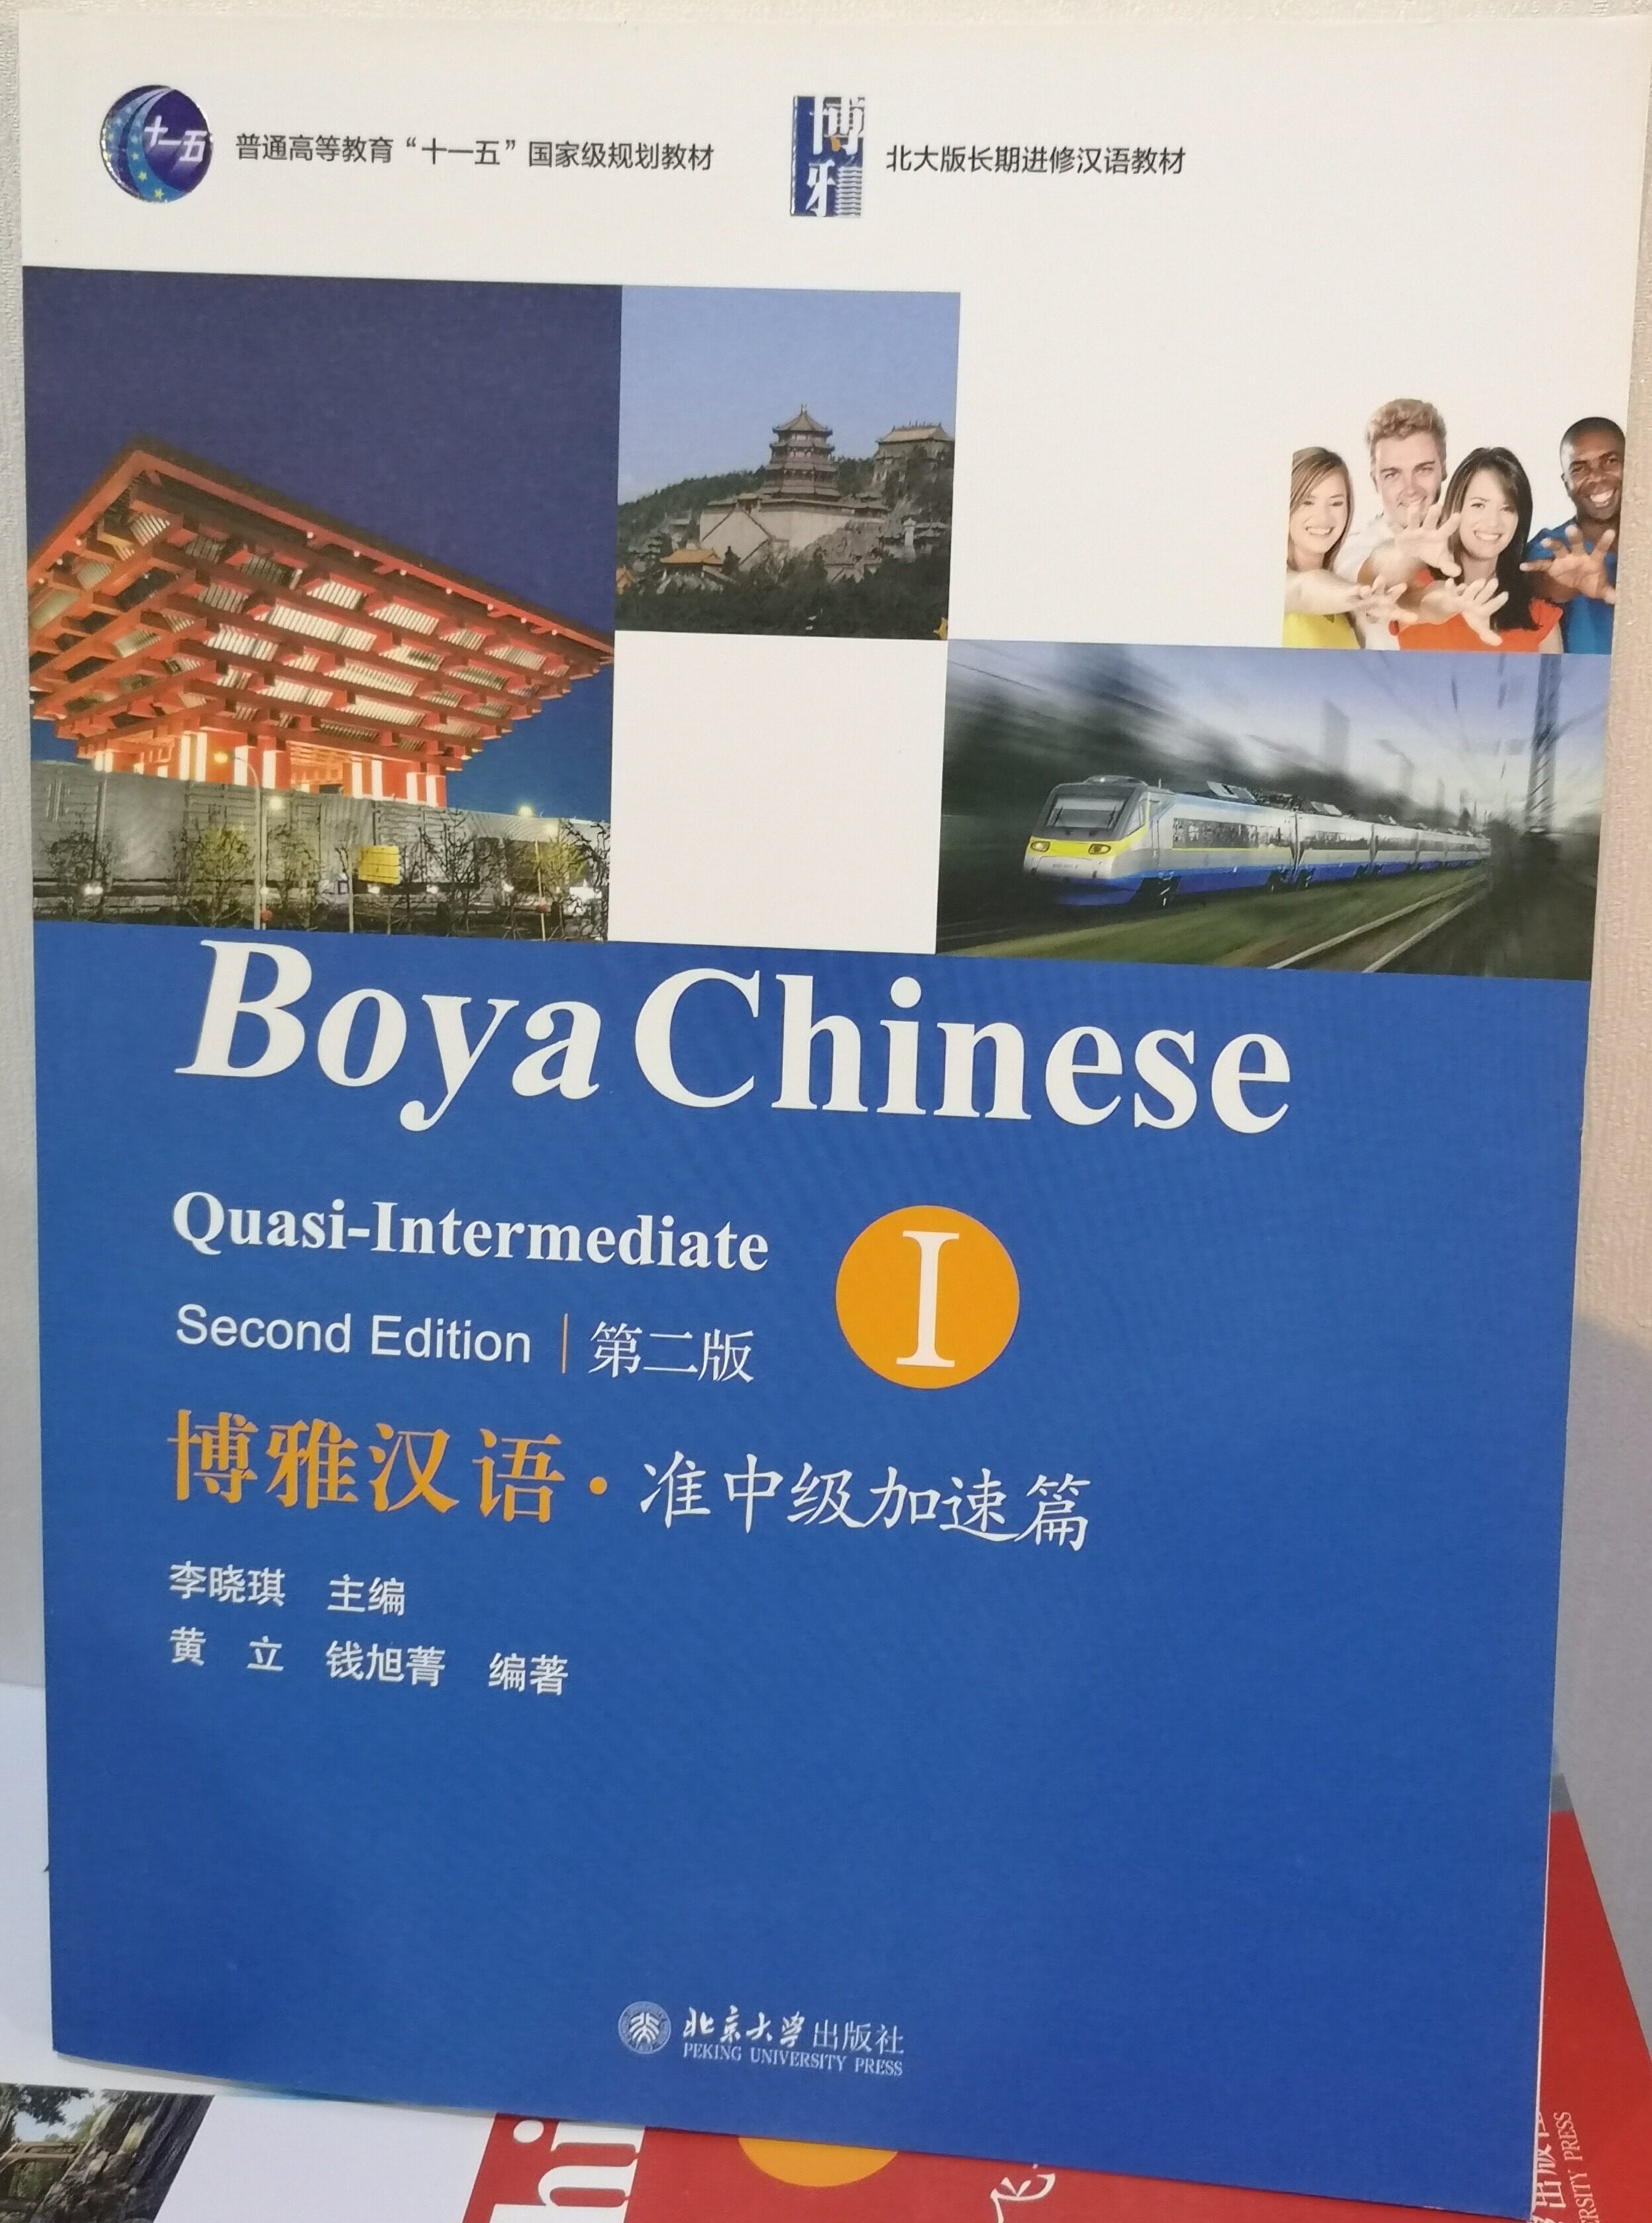 แบบเรียนภาษาจีน  博雅汉语 准中级加速篇 I (第二版） Boya Chinese Quasi-Intermediate I (2nd Edition)(+ 1 MP3-CD)